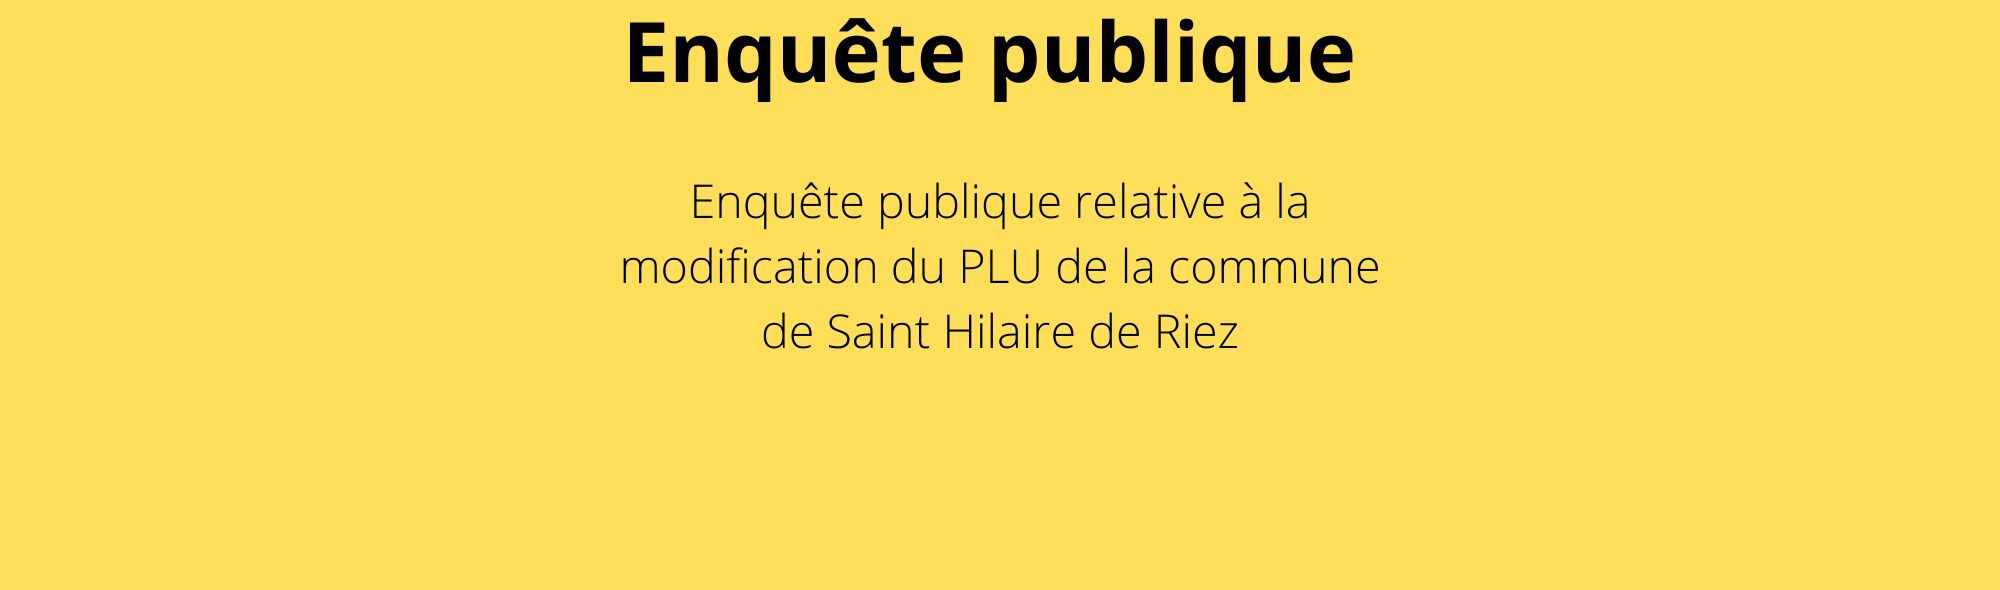 Enquête publique St Hilaire de Riez